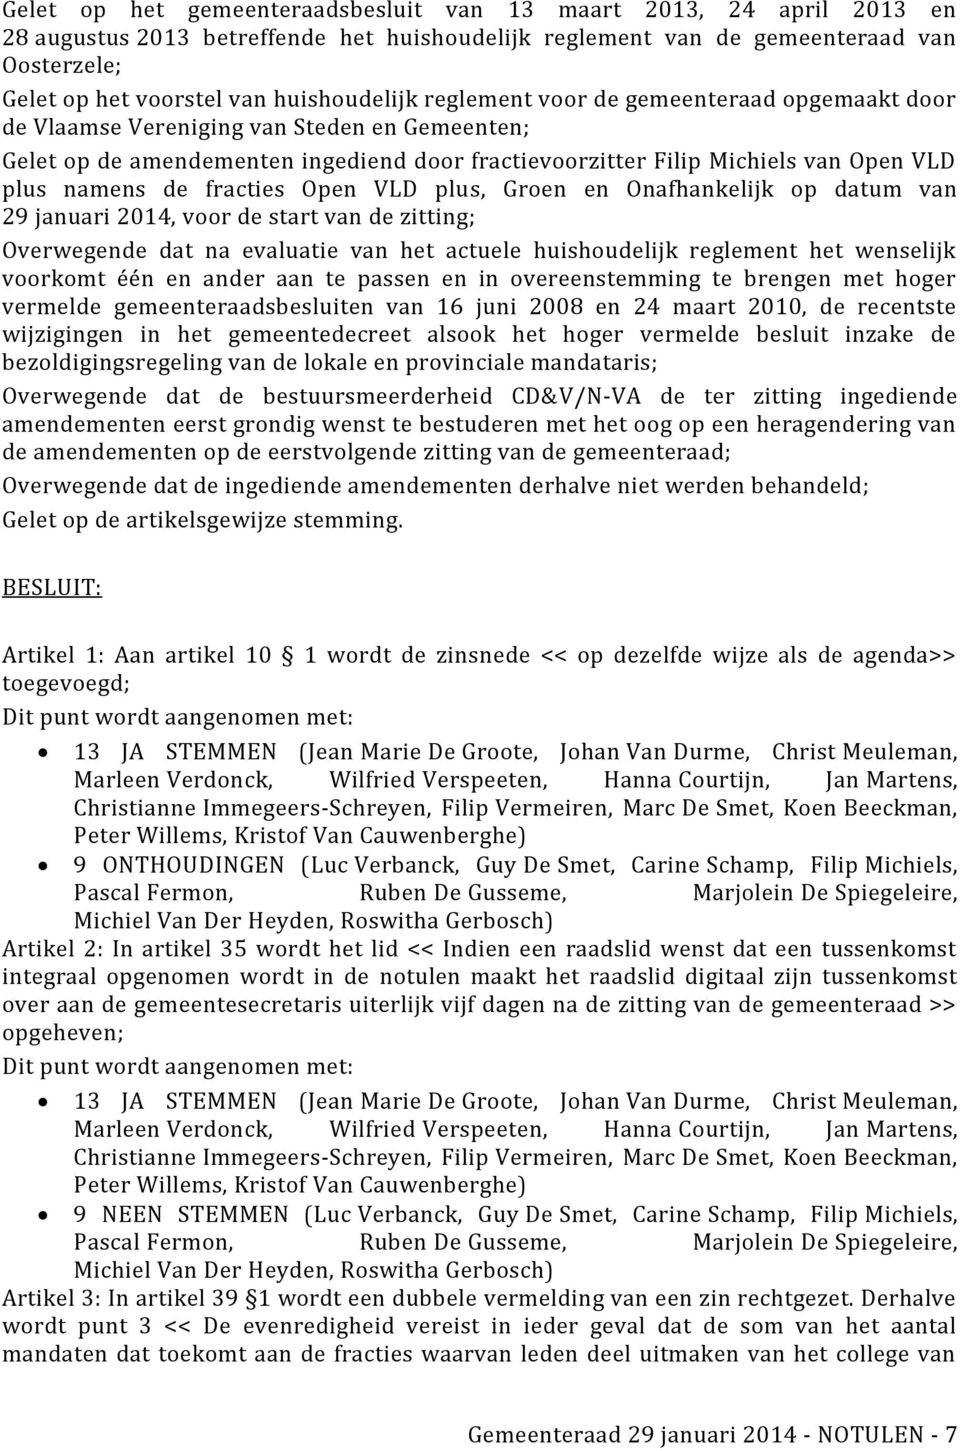 namens de fracties Open VLD plus, Groen en Onafhankelijk op datum van 29 januari 2014, voor de start van de zitting; Overwegende dat na evaluatie van het actuele huishoudelijk reglement het wenselijk